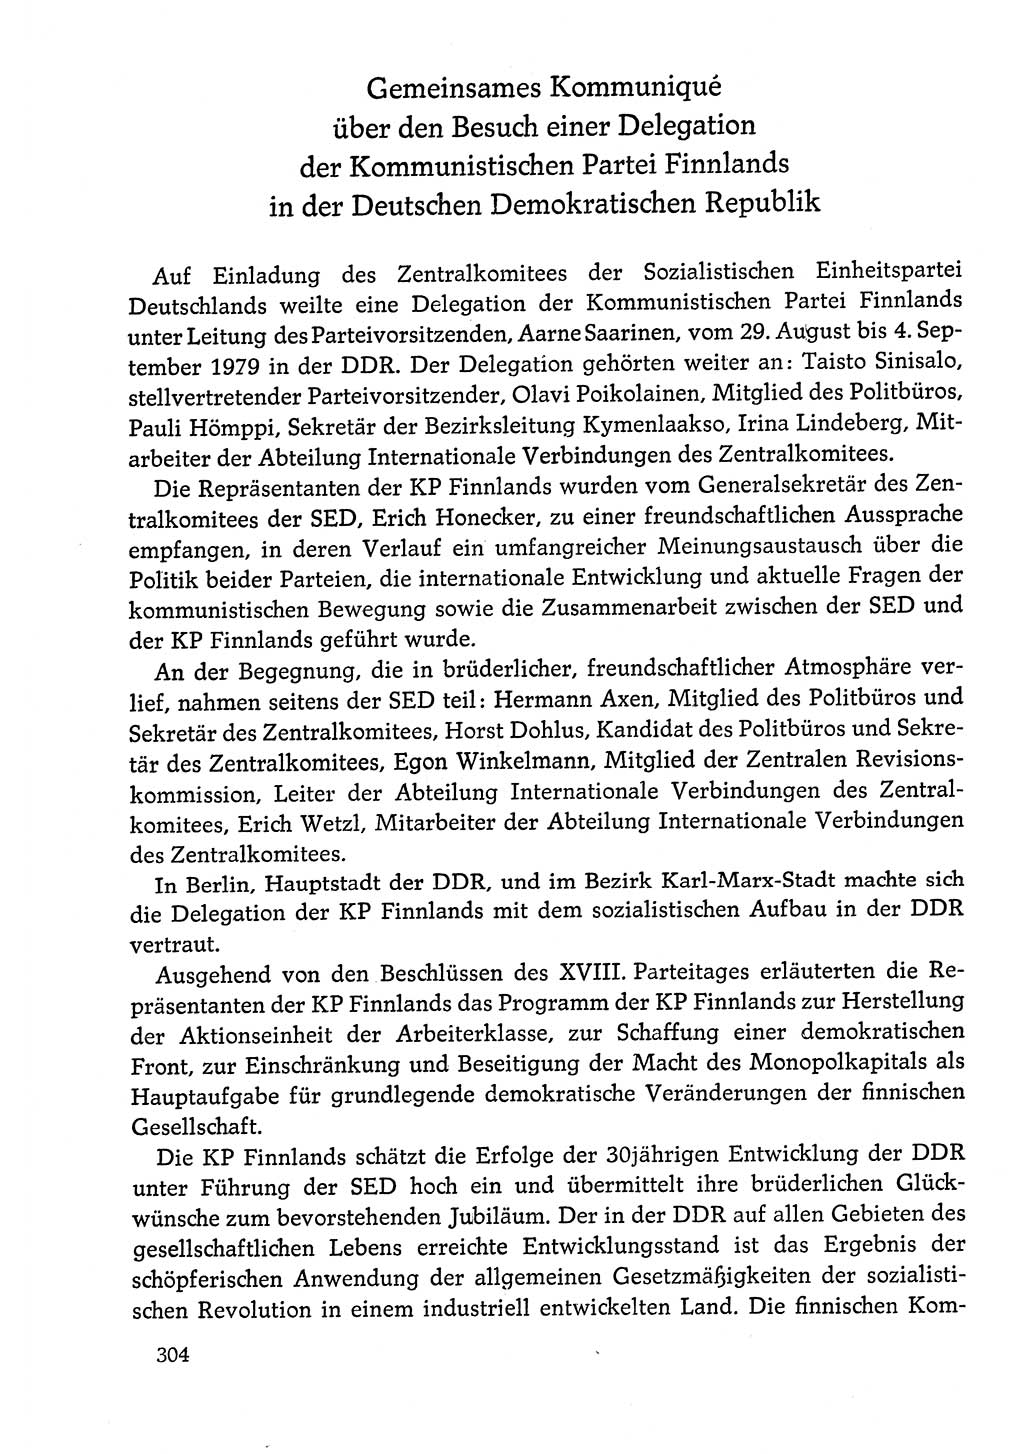 Dokumente der Sozialistischen Einheitspartei Deutschlands (SED) [Deutsche Demokratische Republik (DDR)] 1978-1979, Seite 304 (Dok. SED DDR 1978-1979, S. 304)